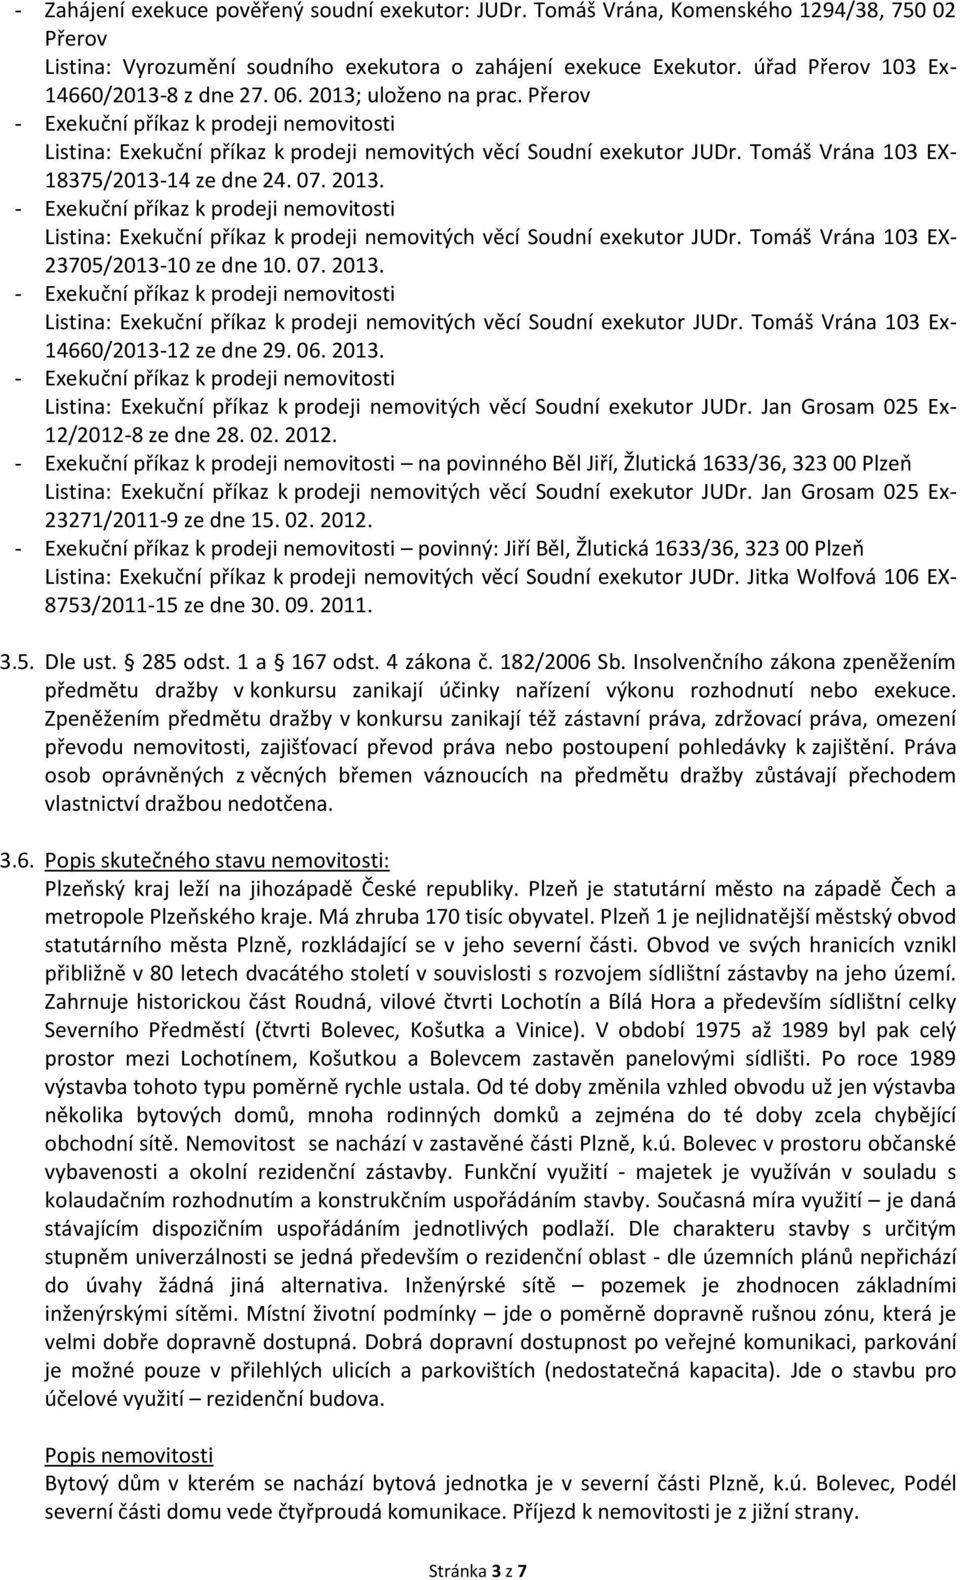 2013. Listina: Exekuční příkaz k prodeji nemovitých věcí Soudní exekutor JUDr. Tomáš Vrána 103 EX- 23705/2013-10 ze dne 10. 07. 2013.